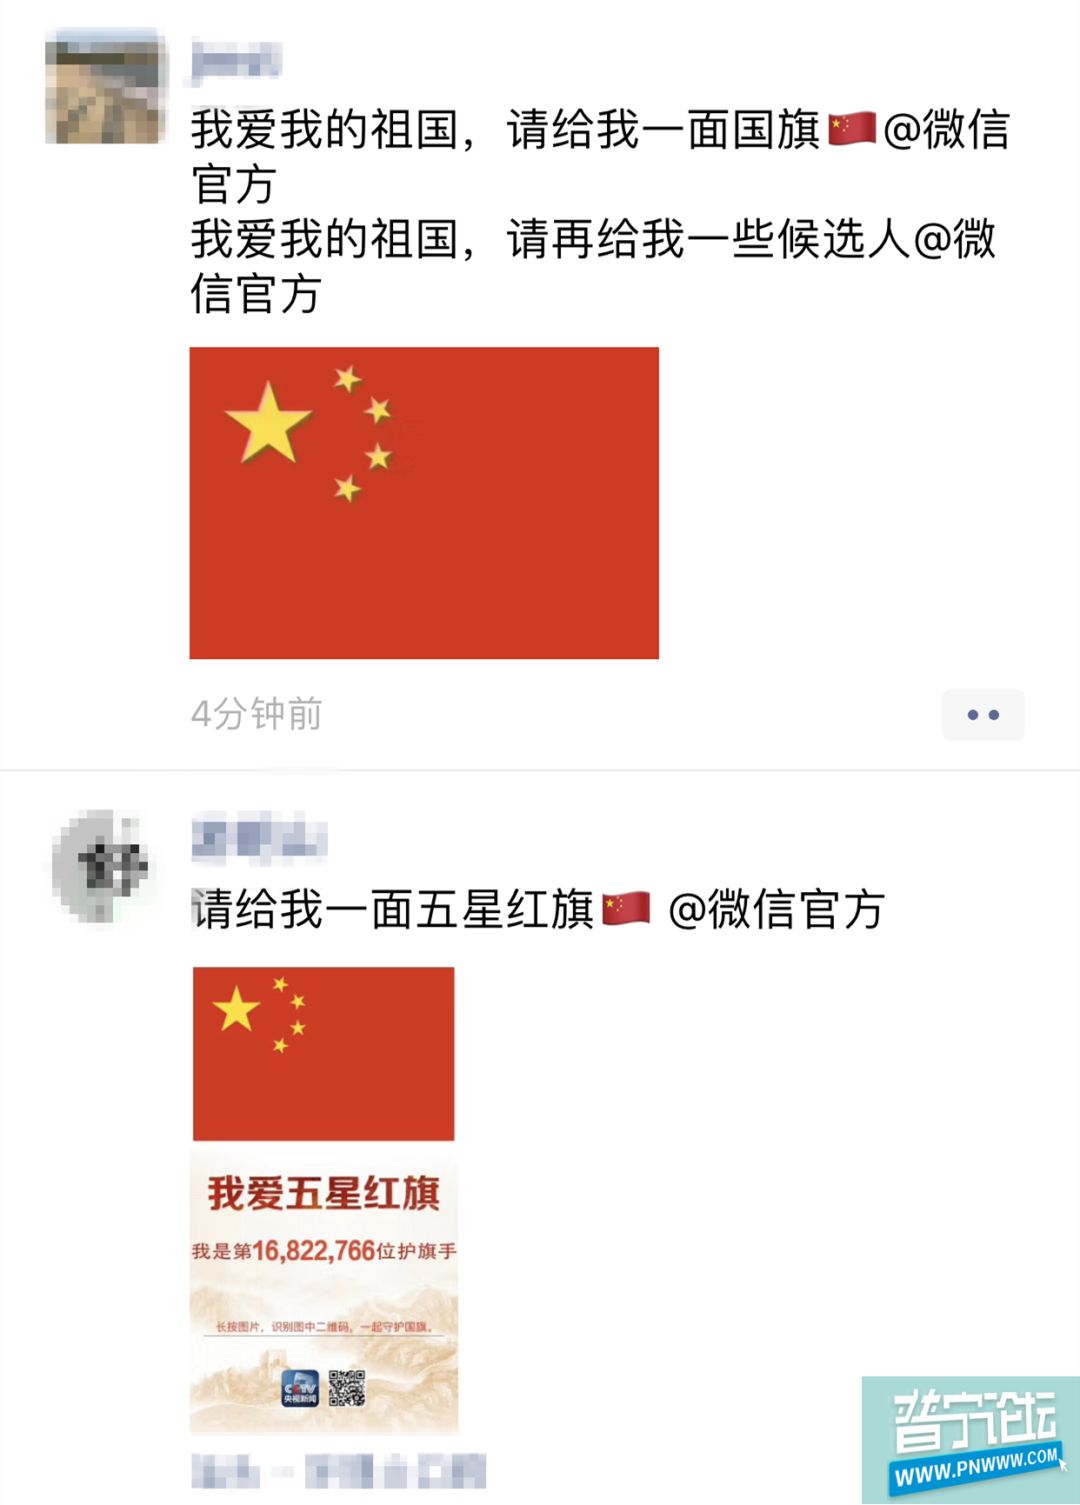 "请给我一面五星红旗@微信官方"刷屏朋友圈!